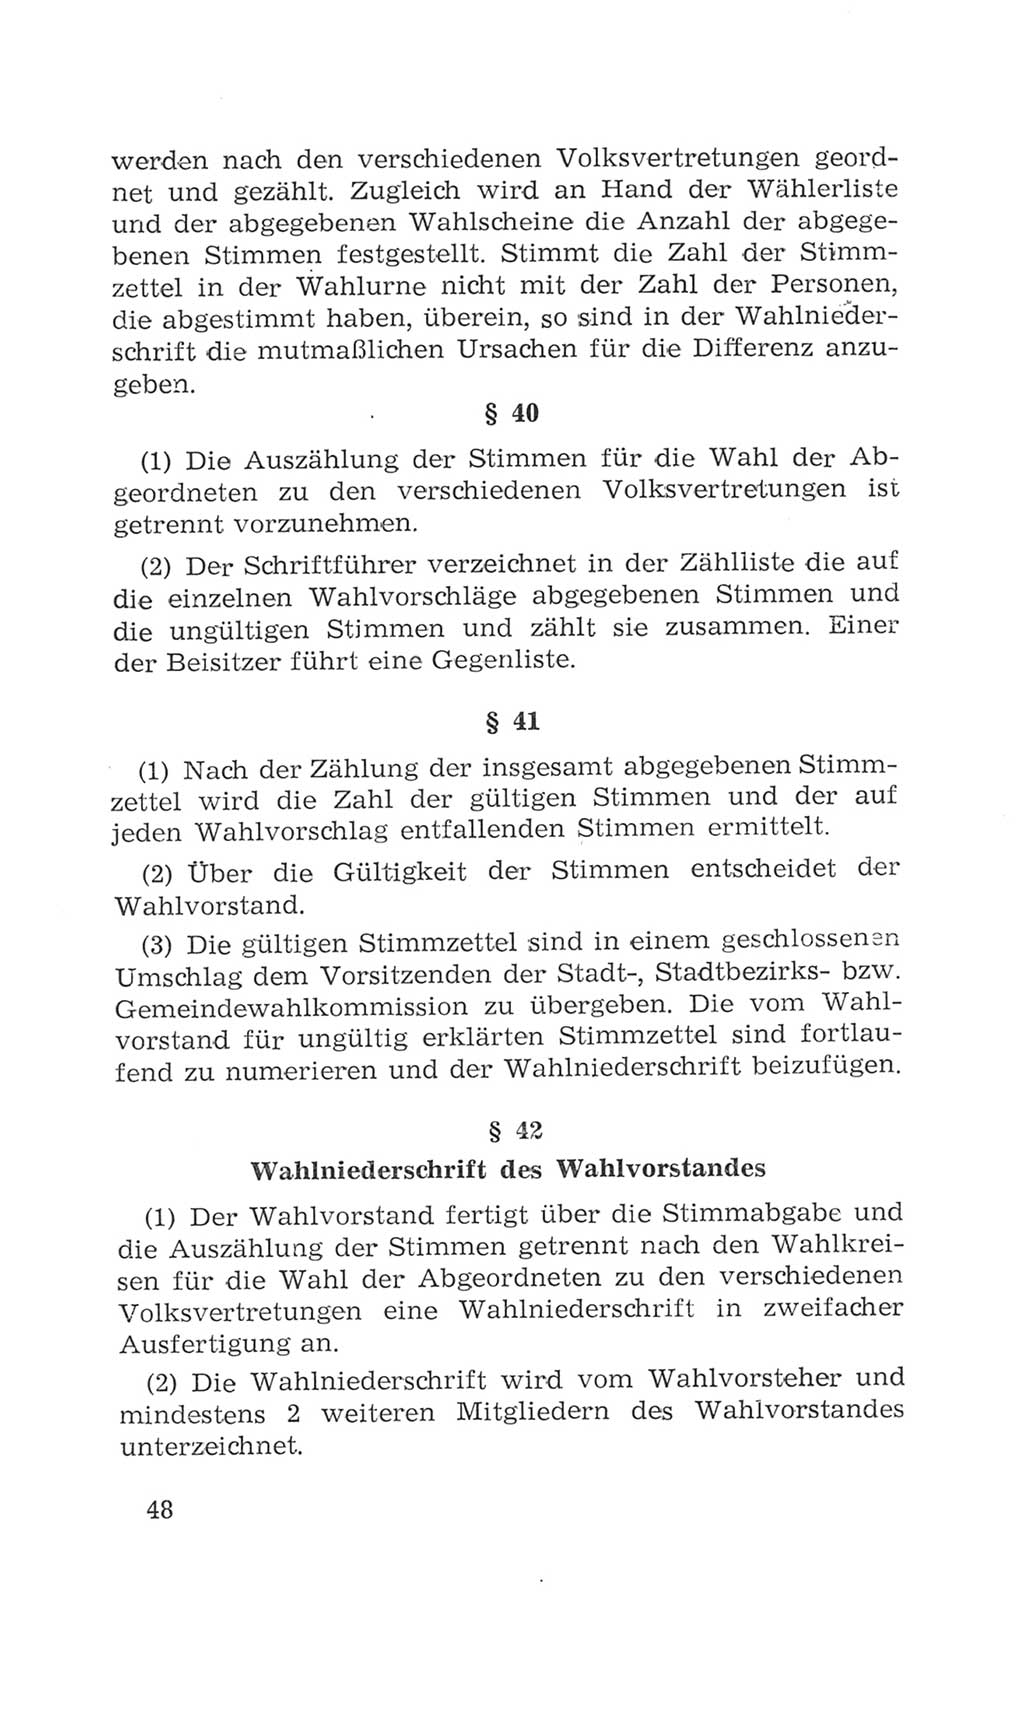 Volkskammer (VK) der Deutschen Demokratischen Republik (DDR), 4. Wahlperiode 1963-1967, Seite 48 (VK. DDR 4. WP. 1963-1967, S. 48)